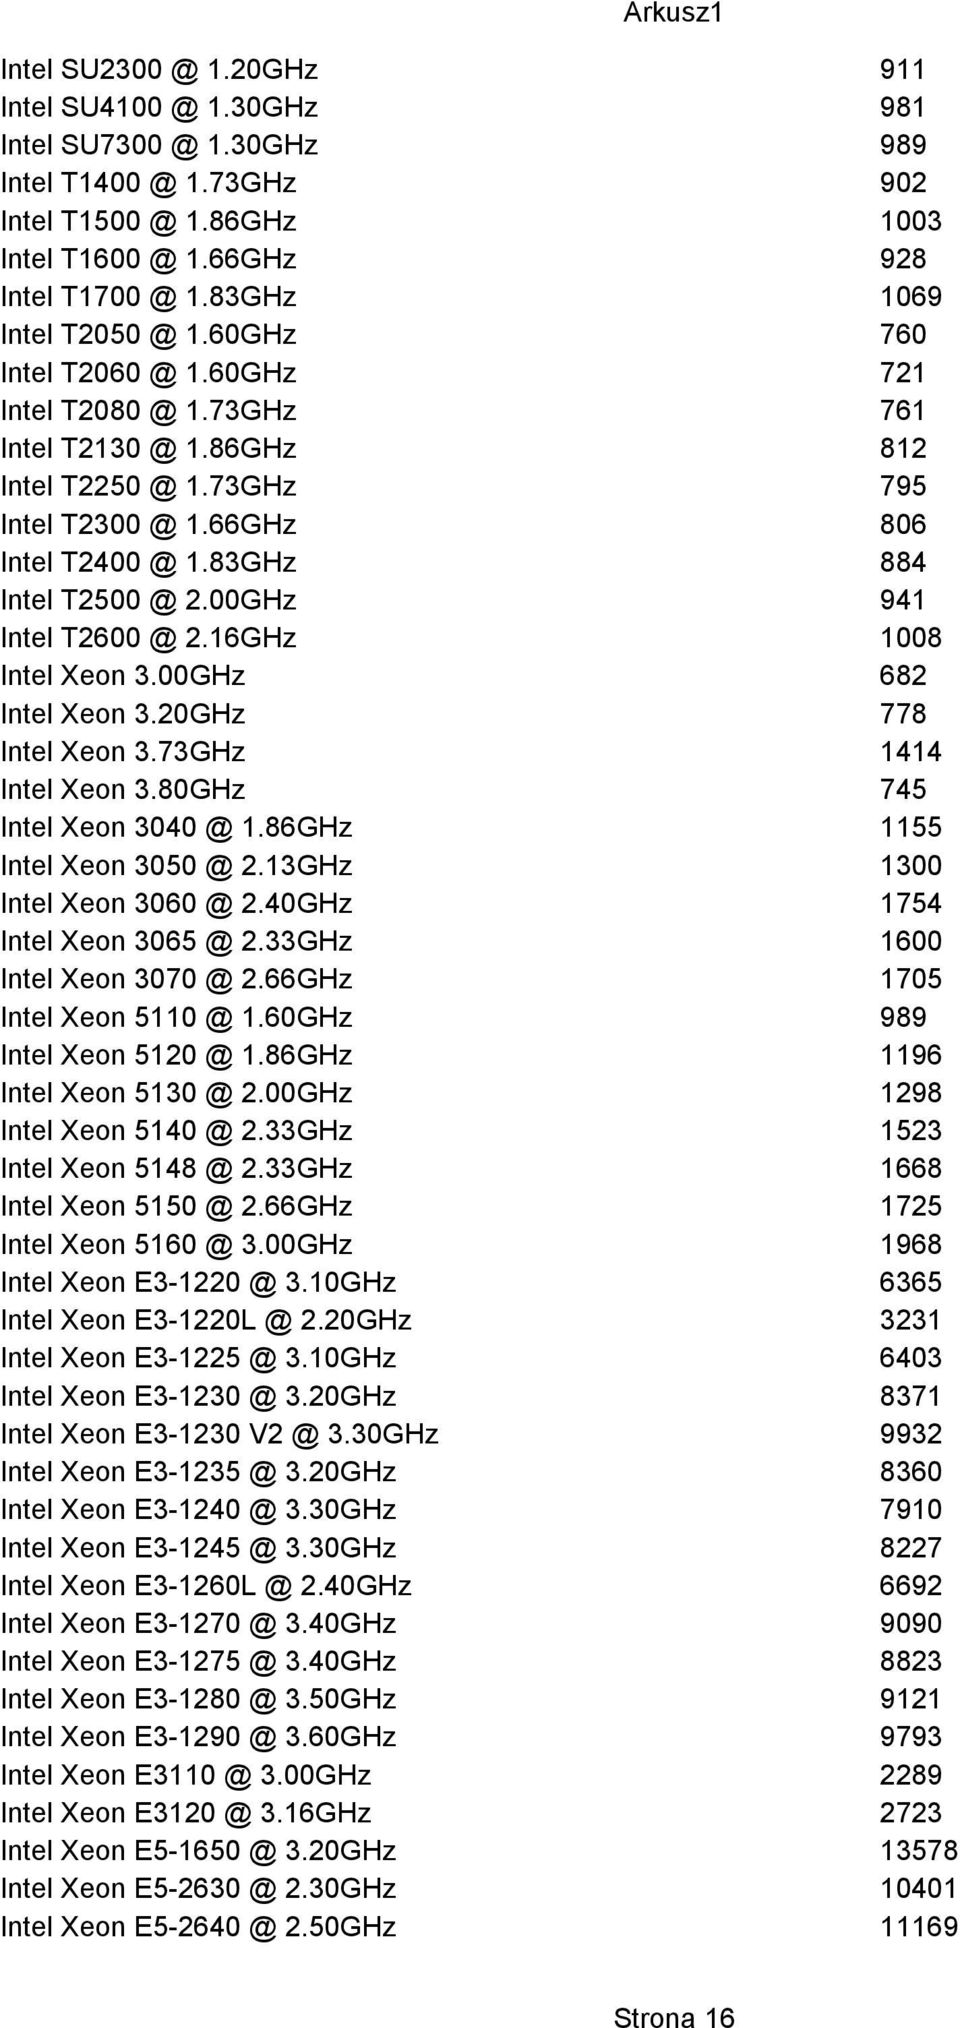 83GHz 884 Intel T2500 @ 2.00GHz 941 Intel T2600 @ 2.16GHz 1008 Intel Xeon 3.00GHz 682 Intel Xeon 3.20GHz 778 Intel Xeon 3.73GHz 1414 Intel Xeon 3.80GHz 745 Intel Xeon 3040 @ 1.